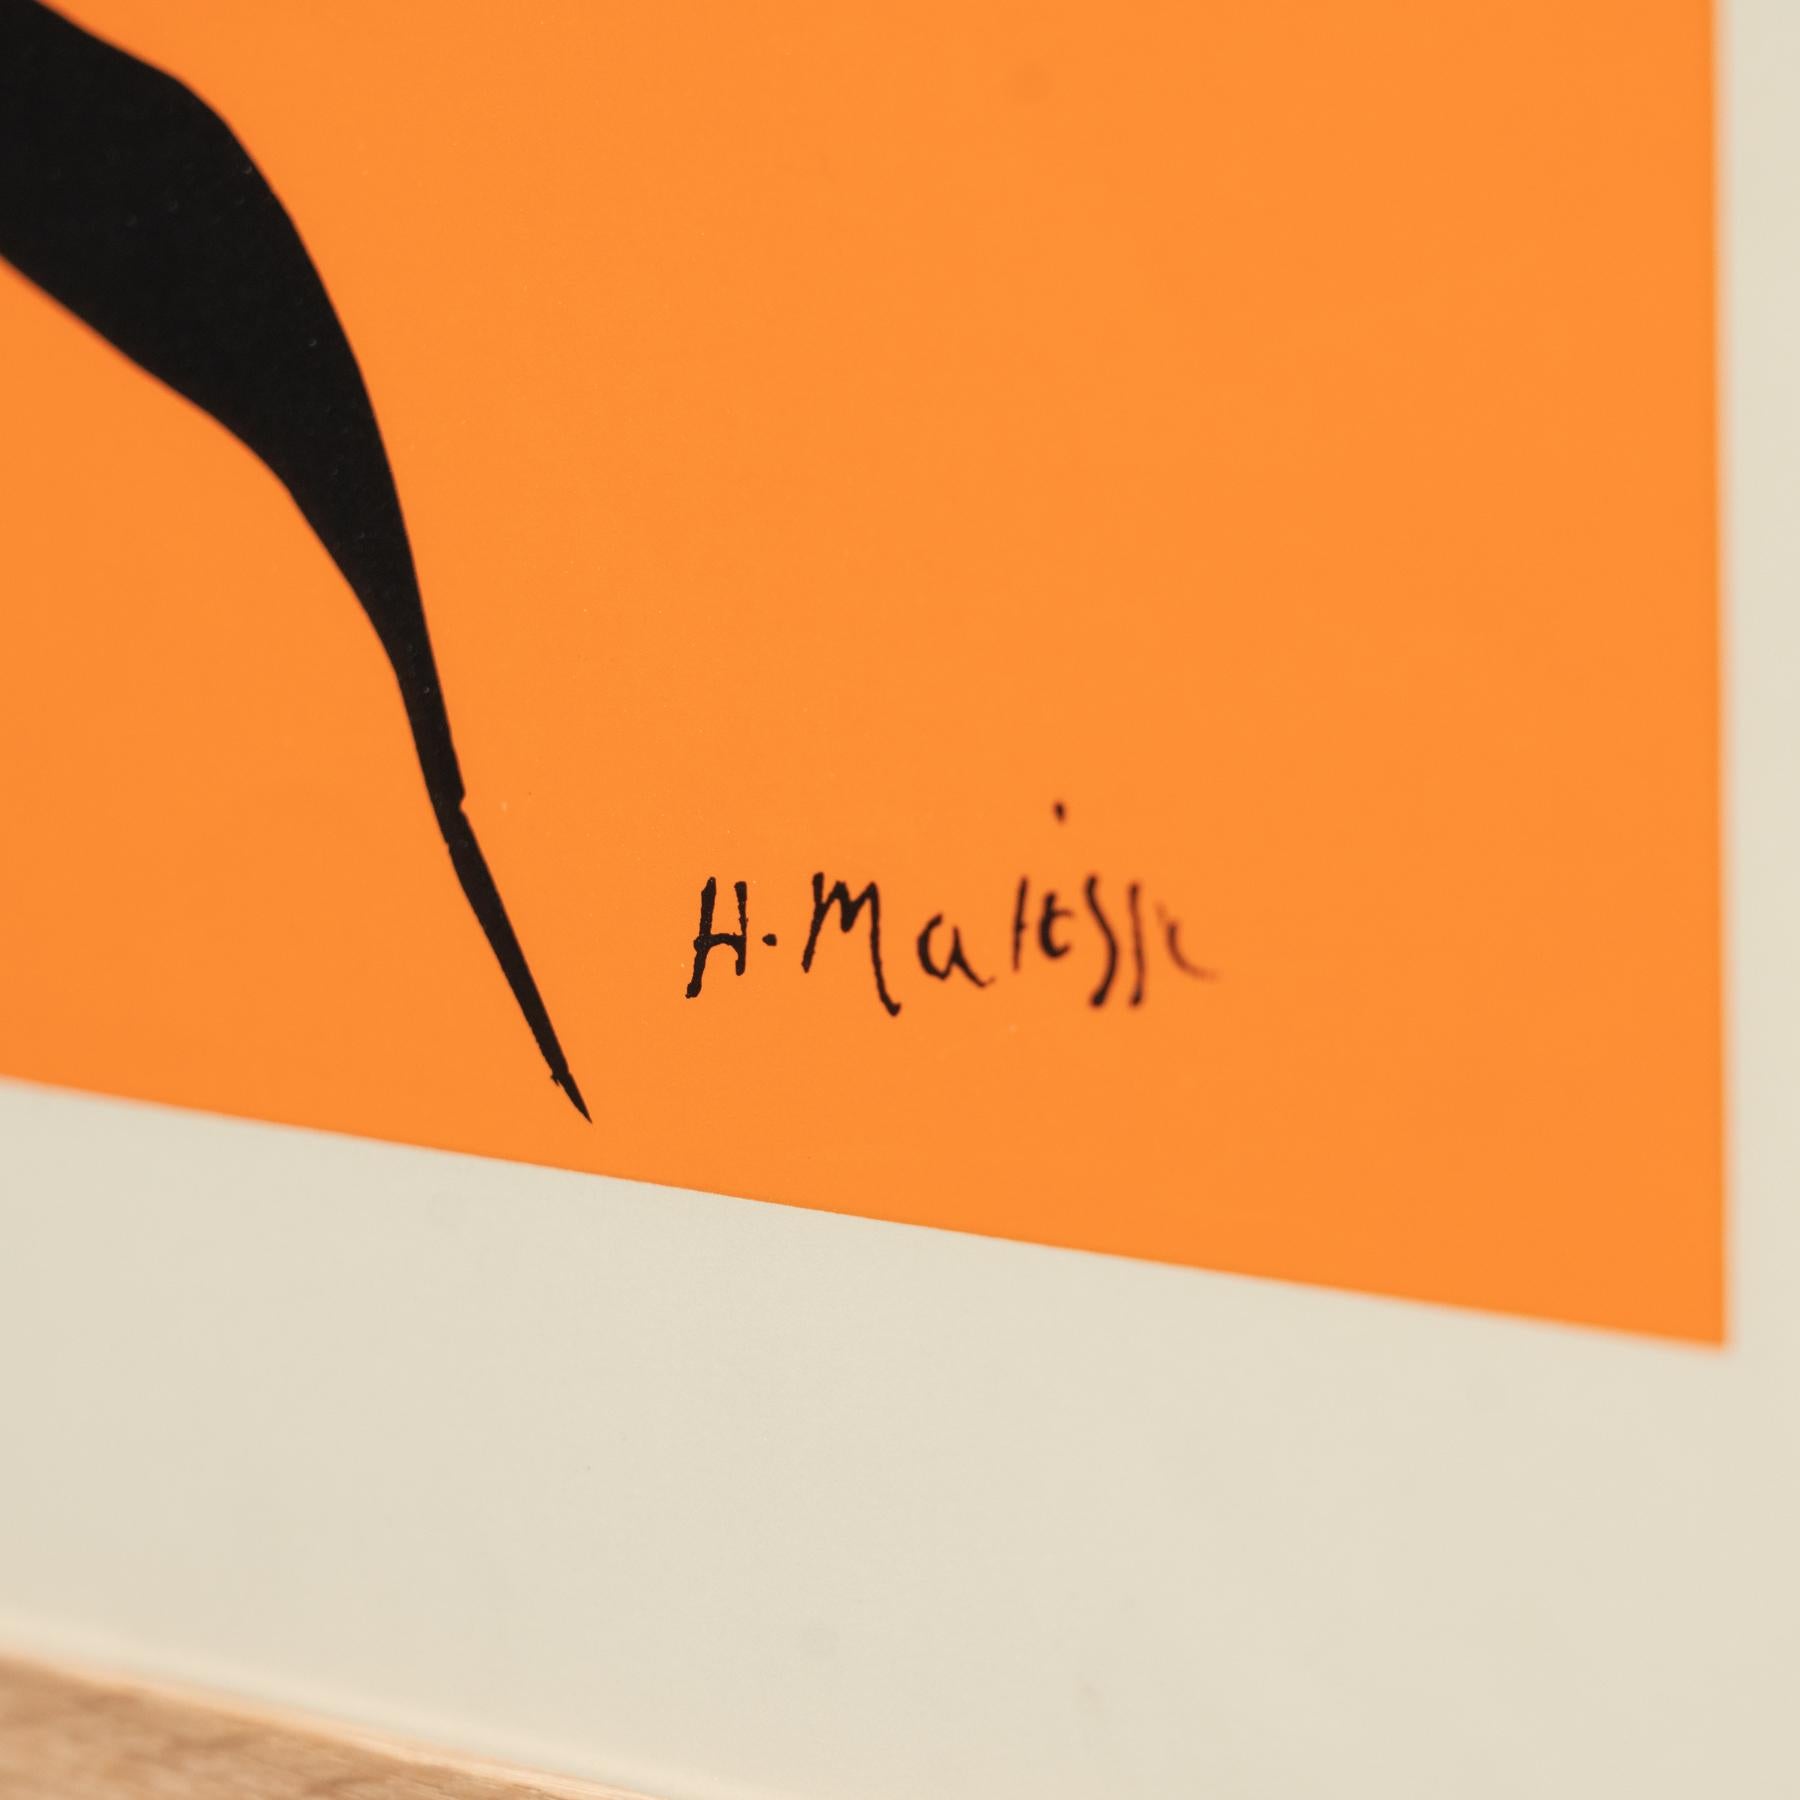 Farblithographie von Henri Matisse, um 1970 (Moderne)